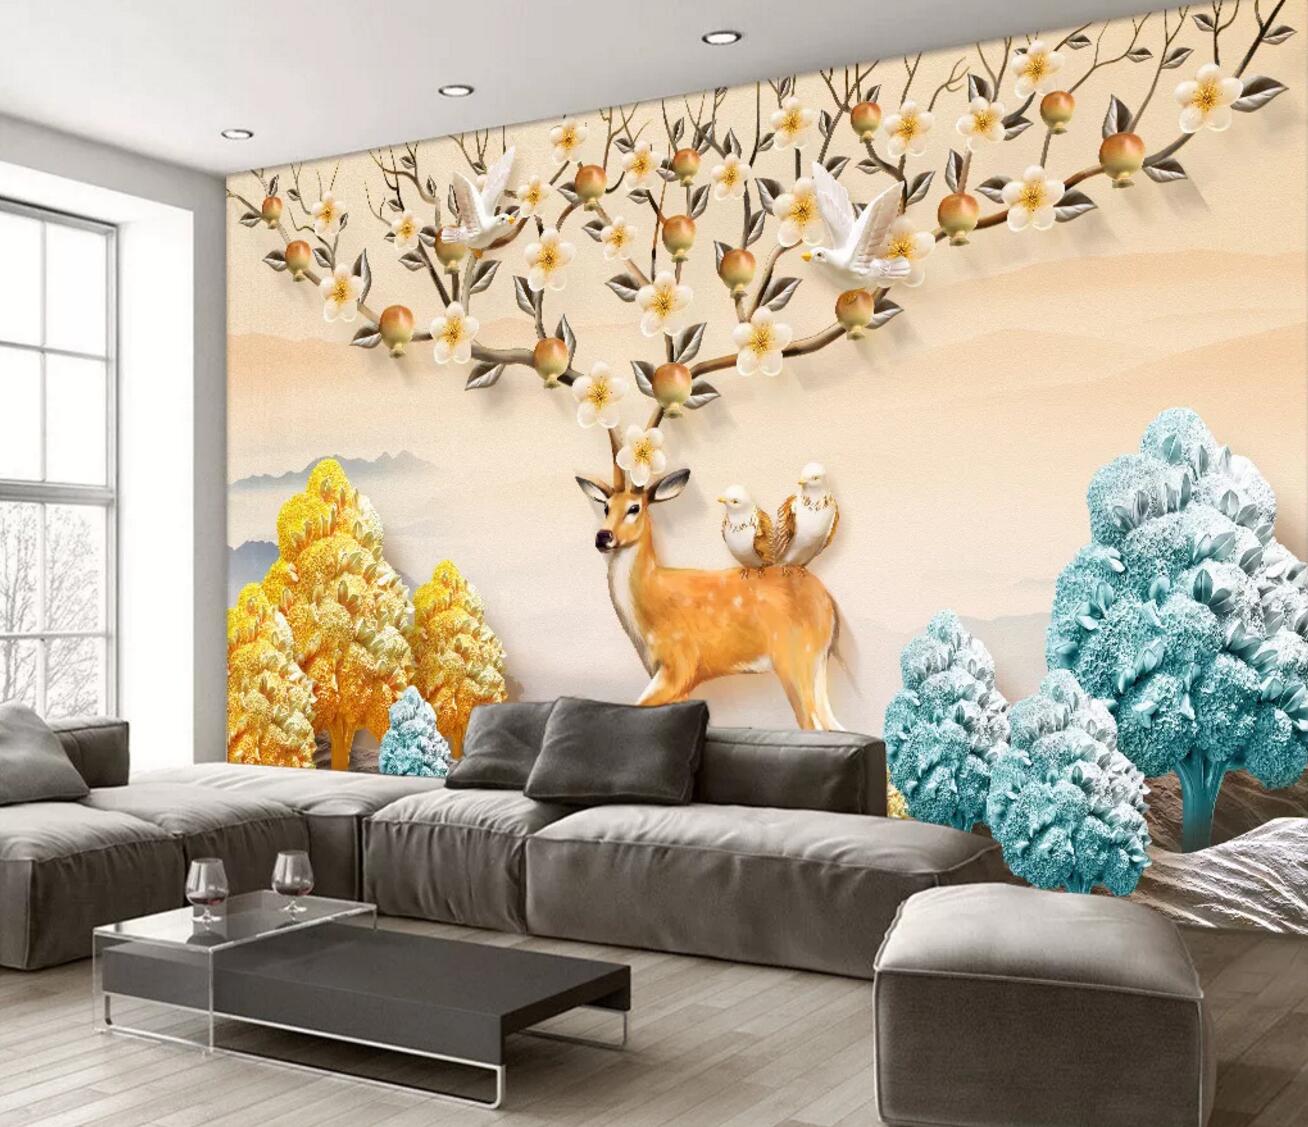 3D Golden Deer Bird WC430 Wall Murals